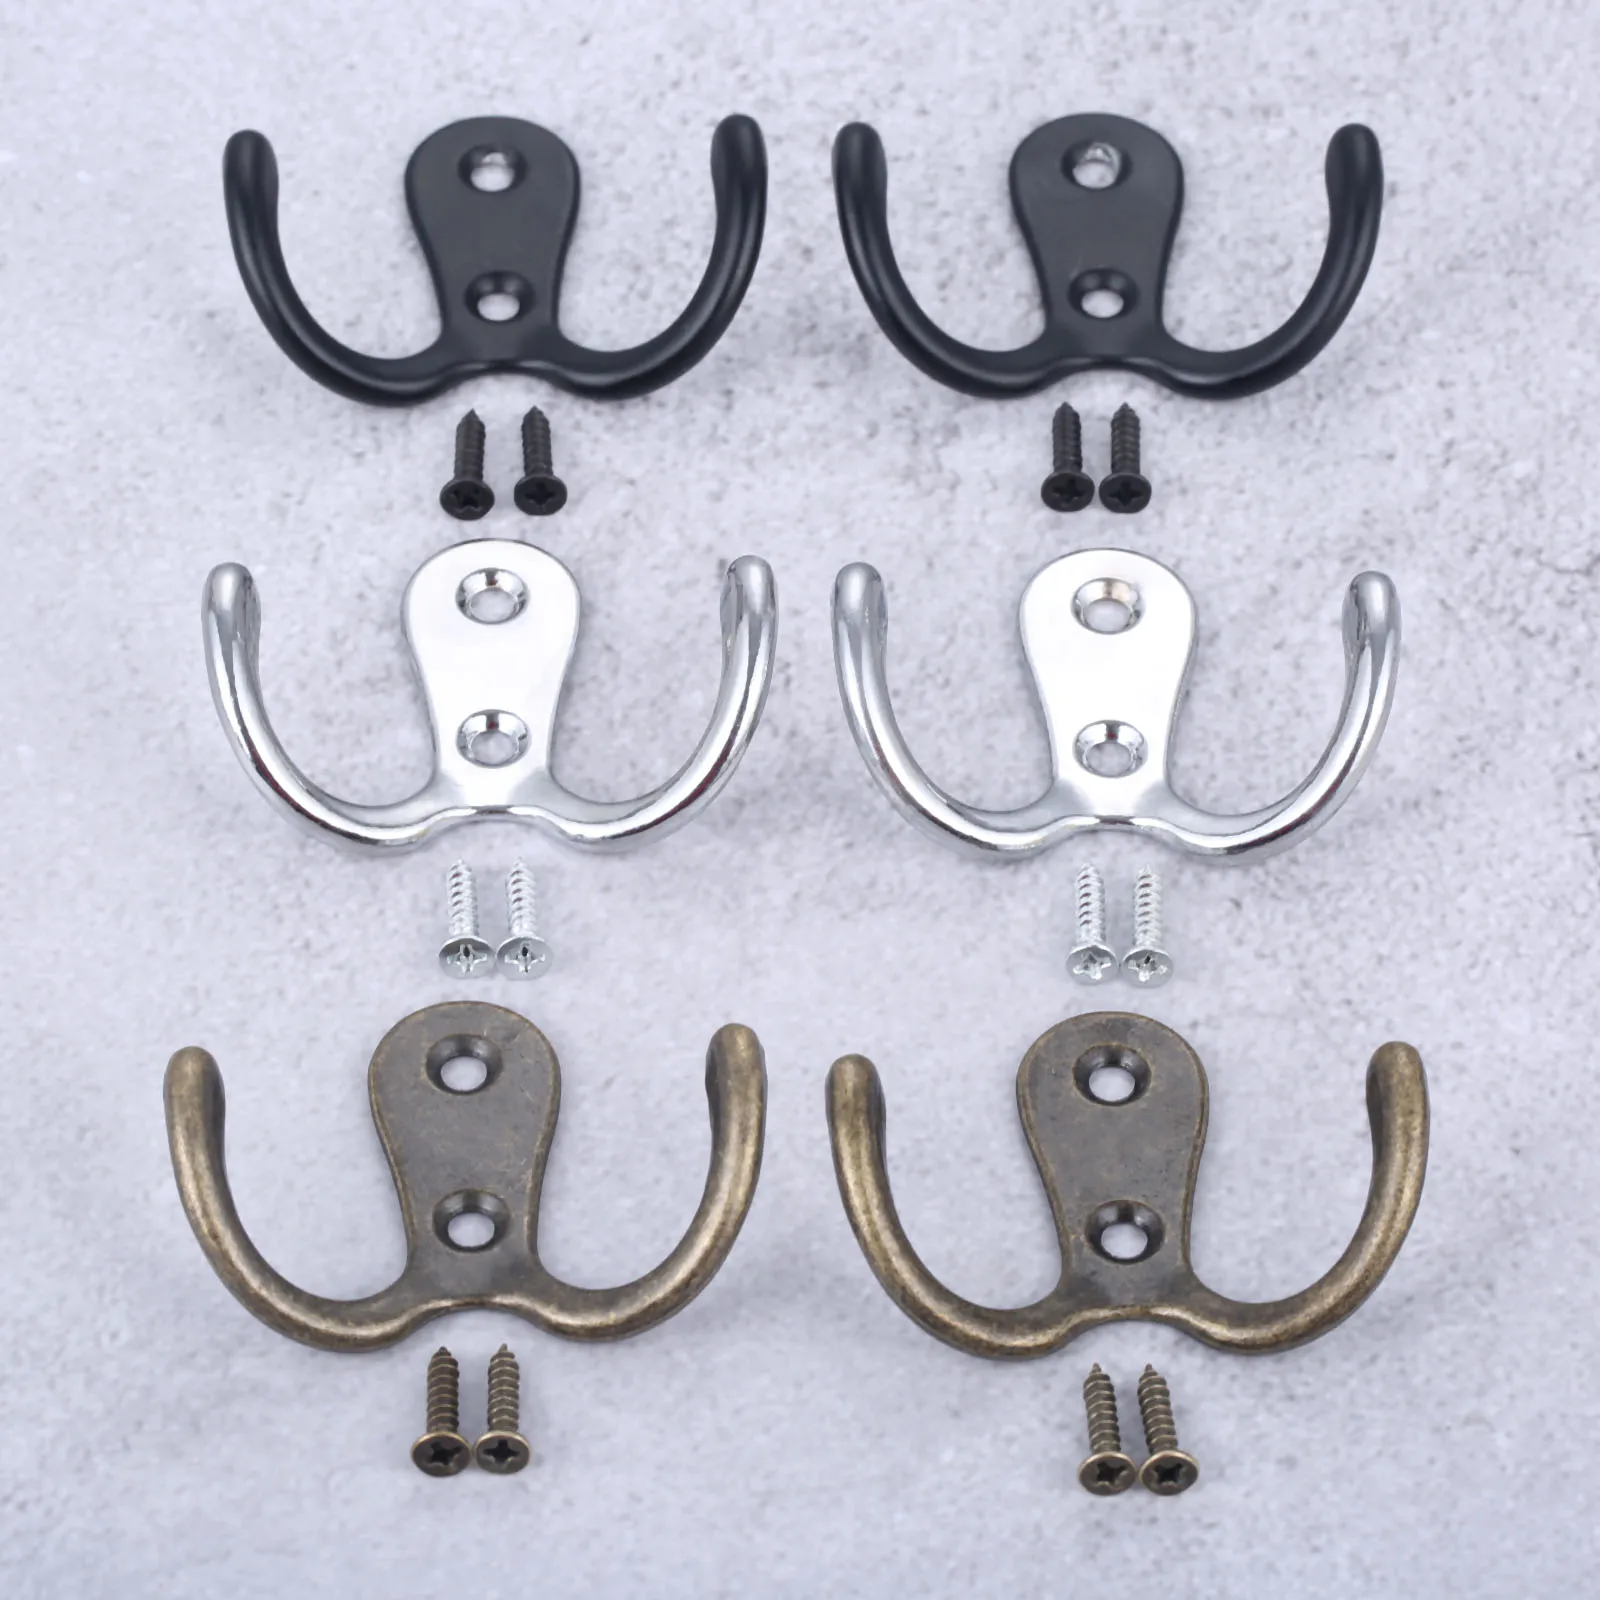 2sets Double Heads Hook Wall/Door Mounted Hanger w/screws Black/Silver/Antique Bronze Coat/Key/Bag/Towel/Hat/Mask Holder 55mm images - 6